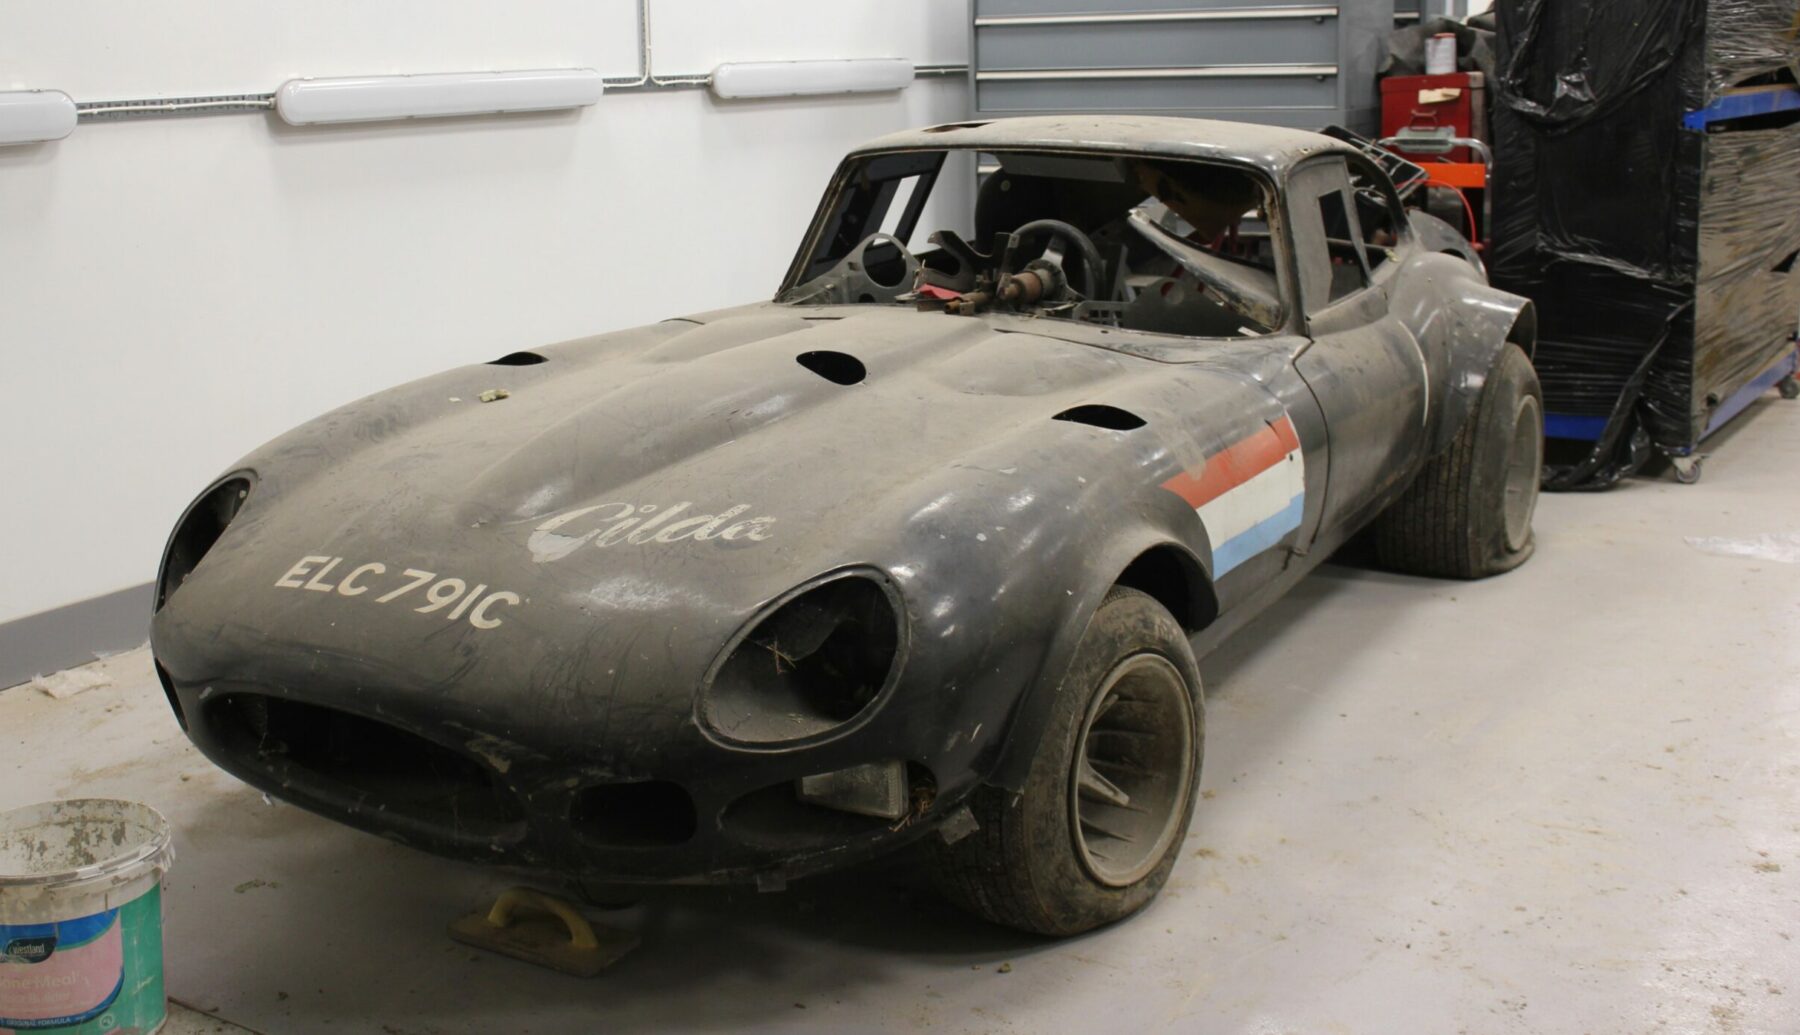 E Type Racer – Built for the Thrill